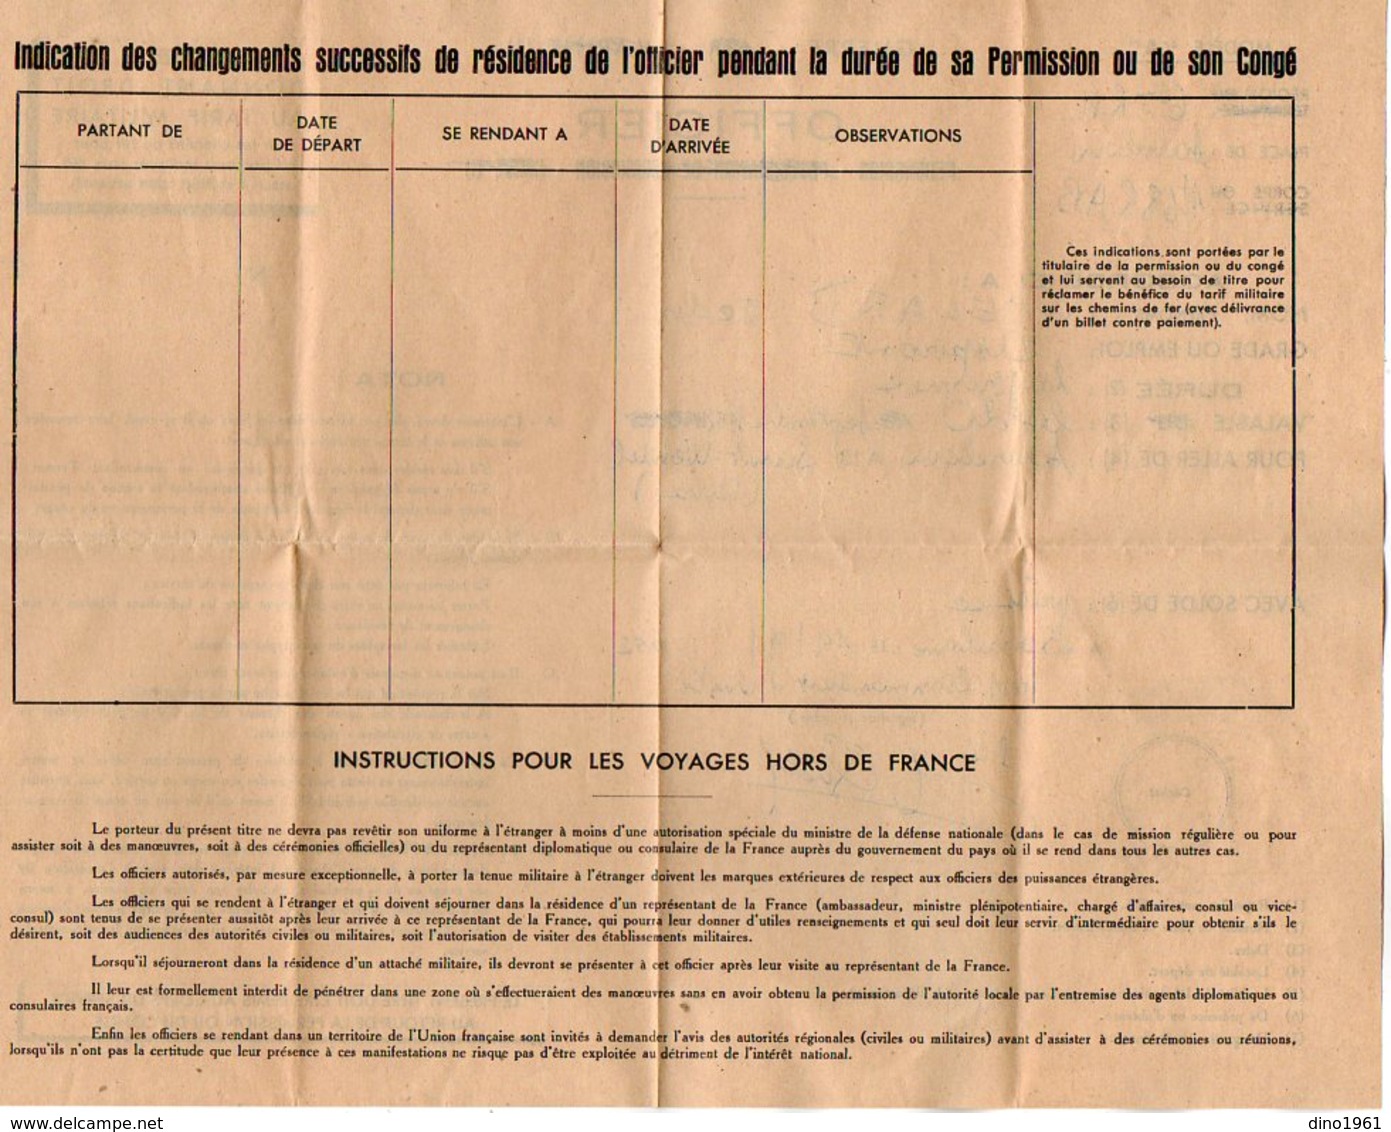 VP12.018 - MILITARIA - SARRELOUIS - 1ère Division Blindée 68e Régiment D'Artillerie - Permission Soldat QUELARD - Documenti